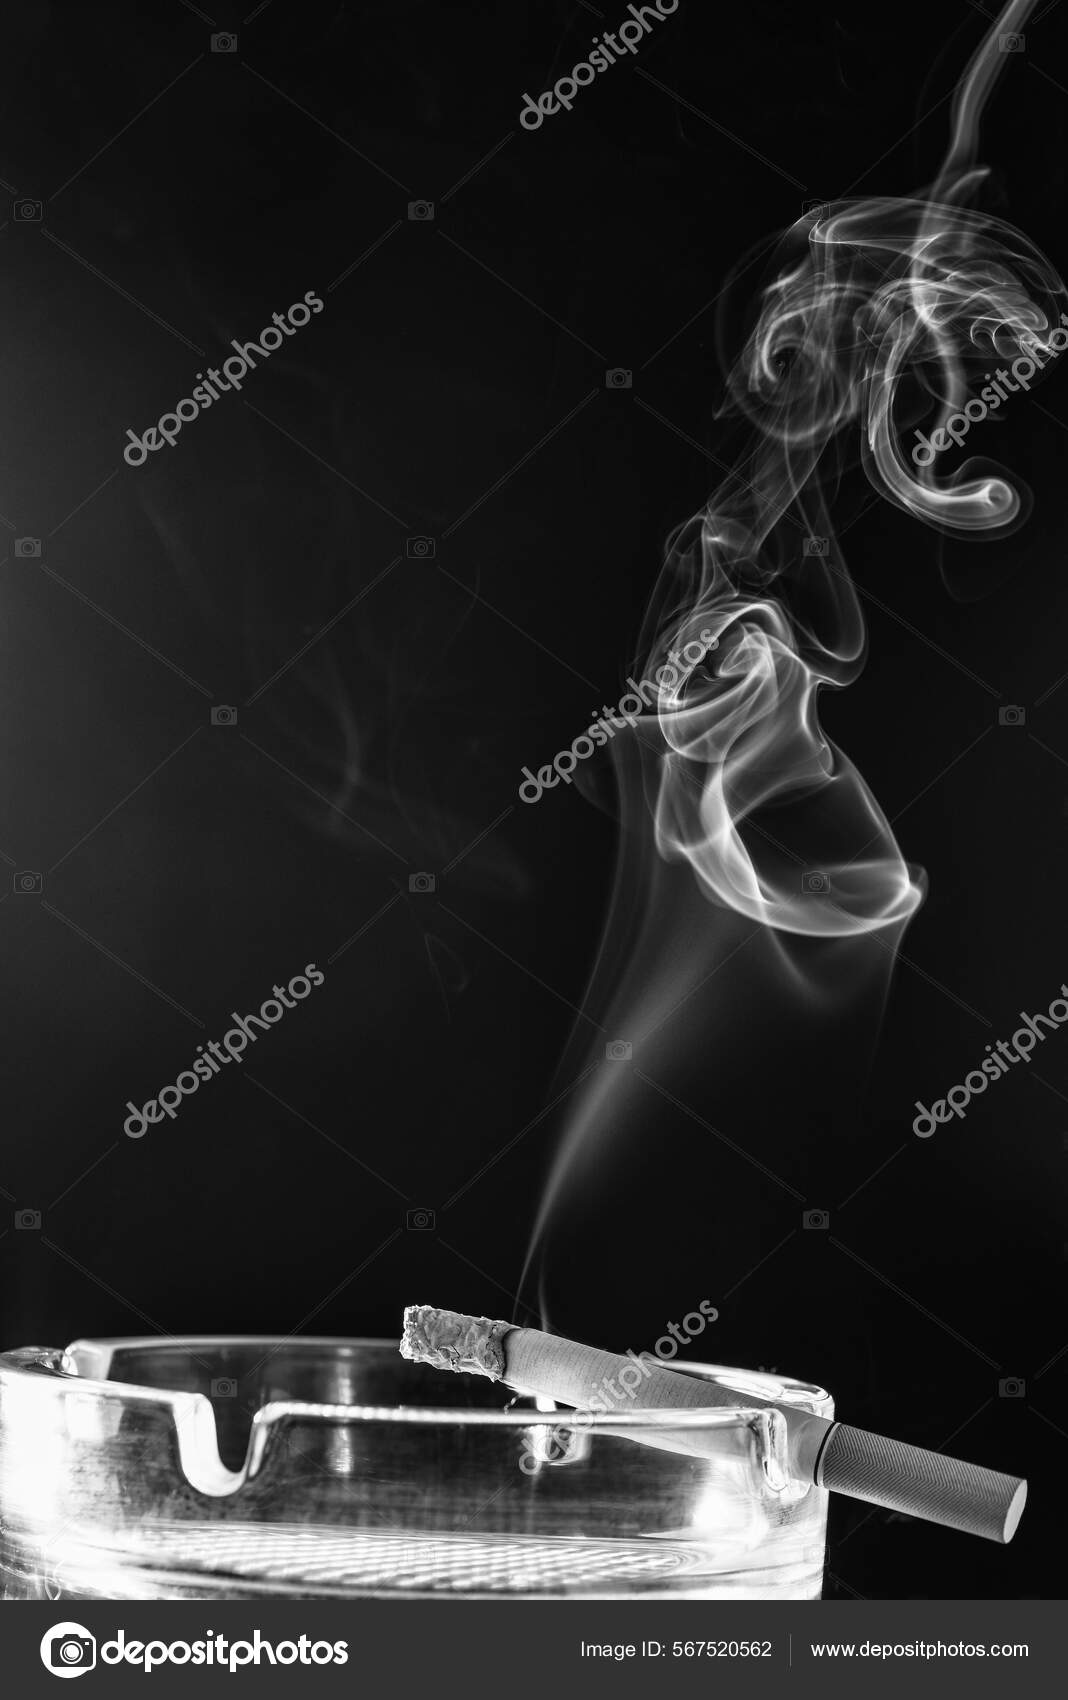 Rauchschwaden. Rauch steigt aus einer Zigarette im Aschenbecher